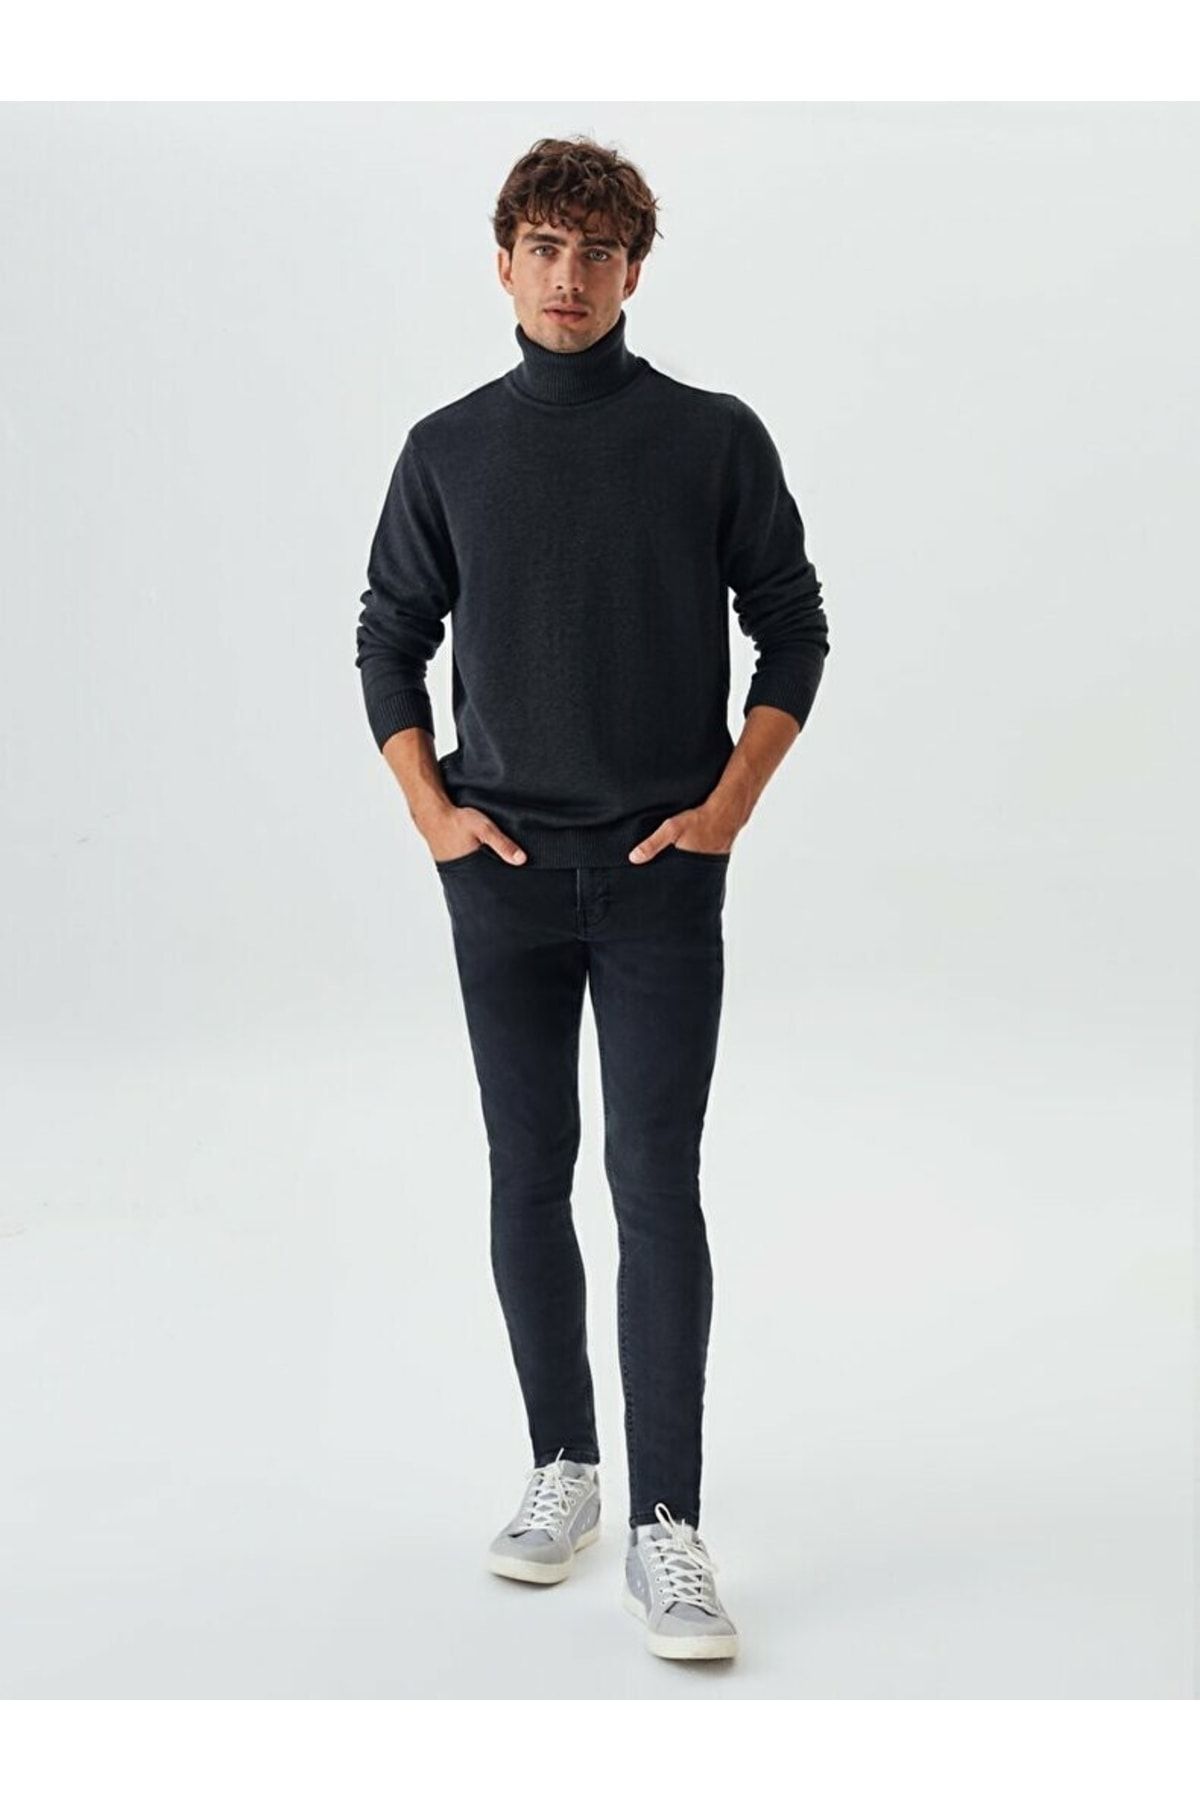 Orijinal Louis Vuitton Erkek Cüzdan - Erkek Giyim Aksesuarları  'da - 1128474863